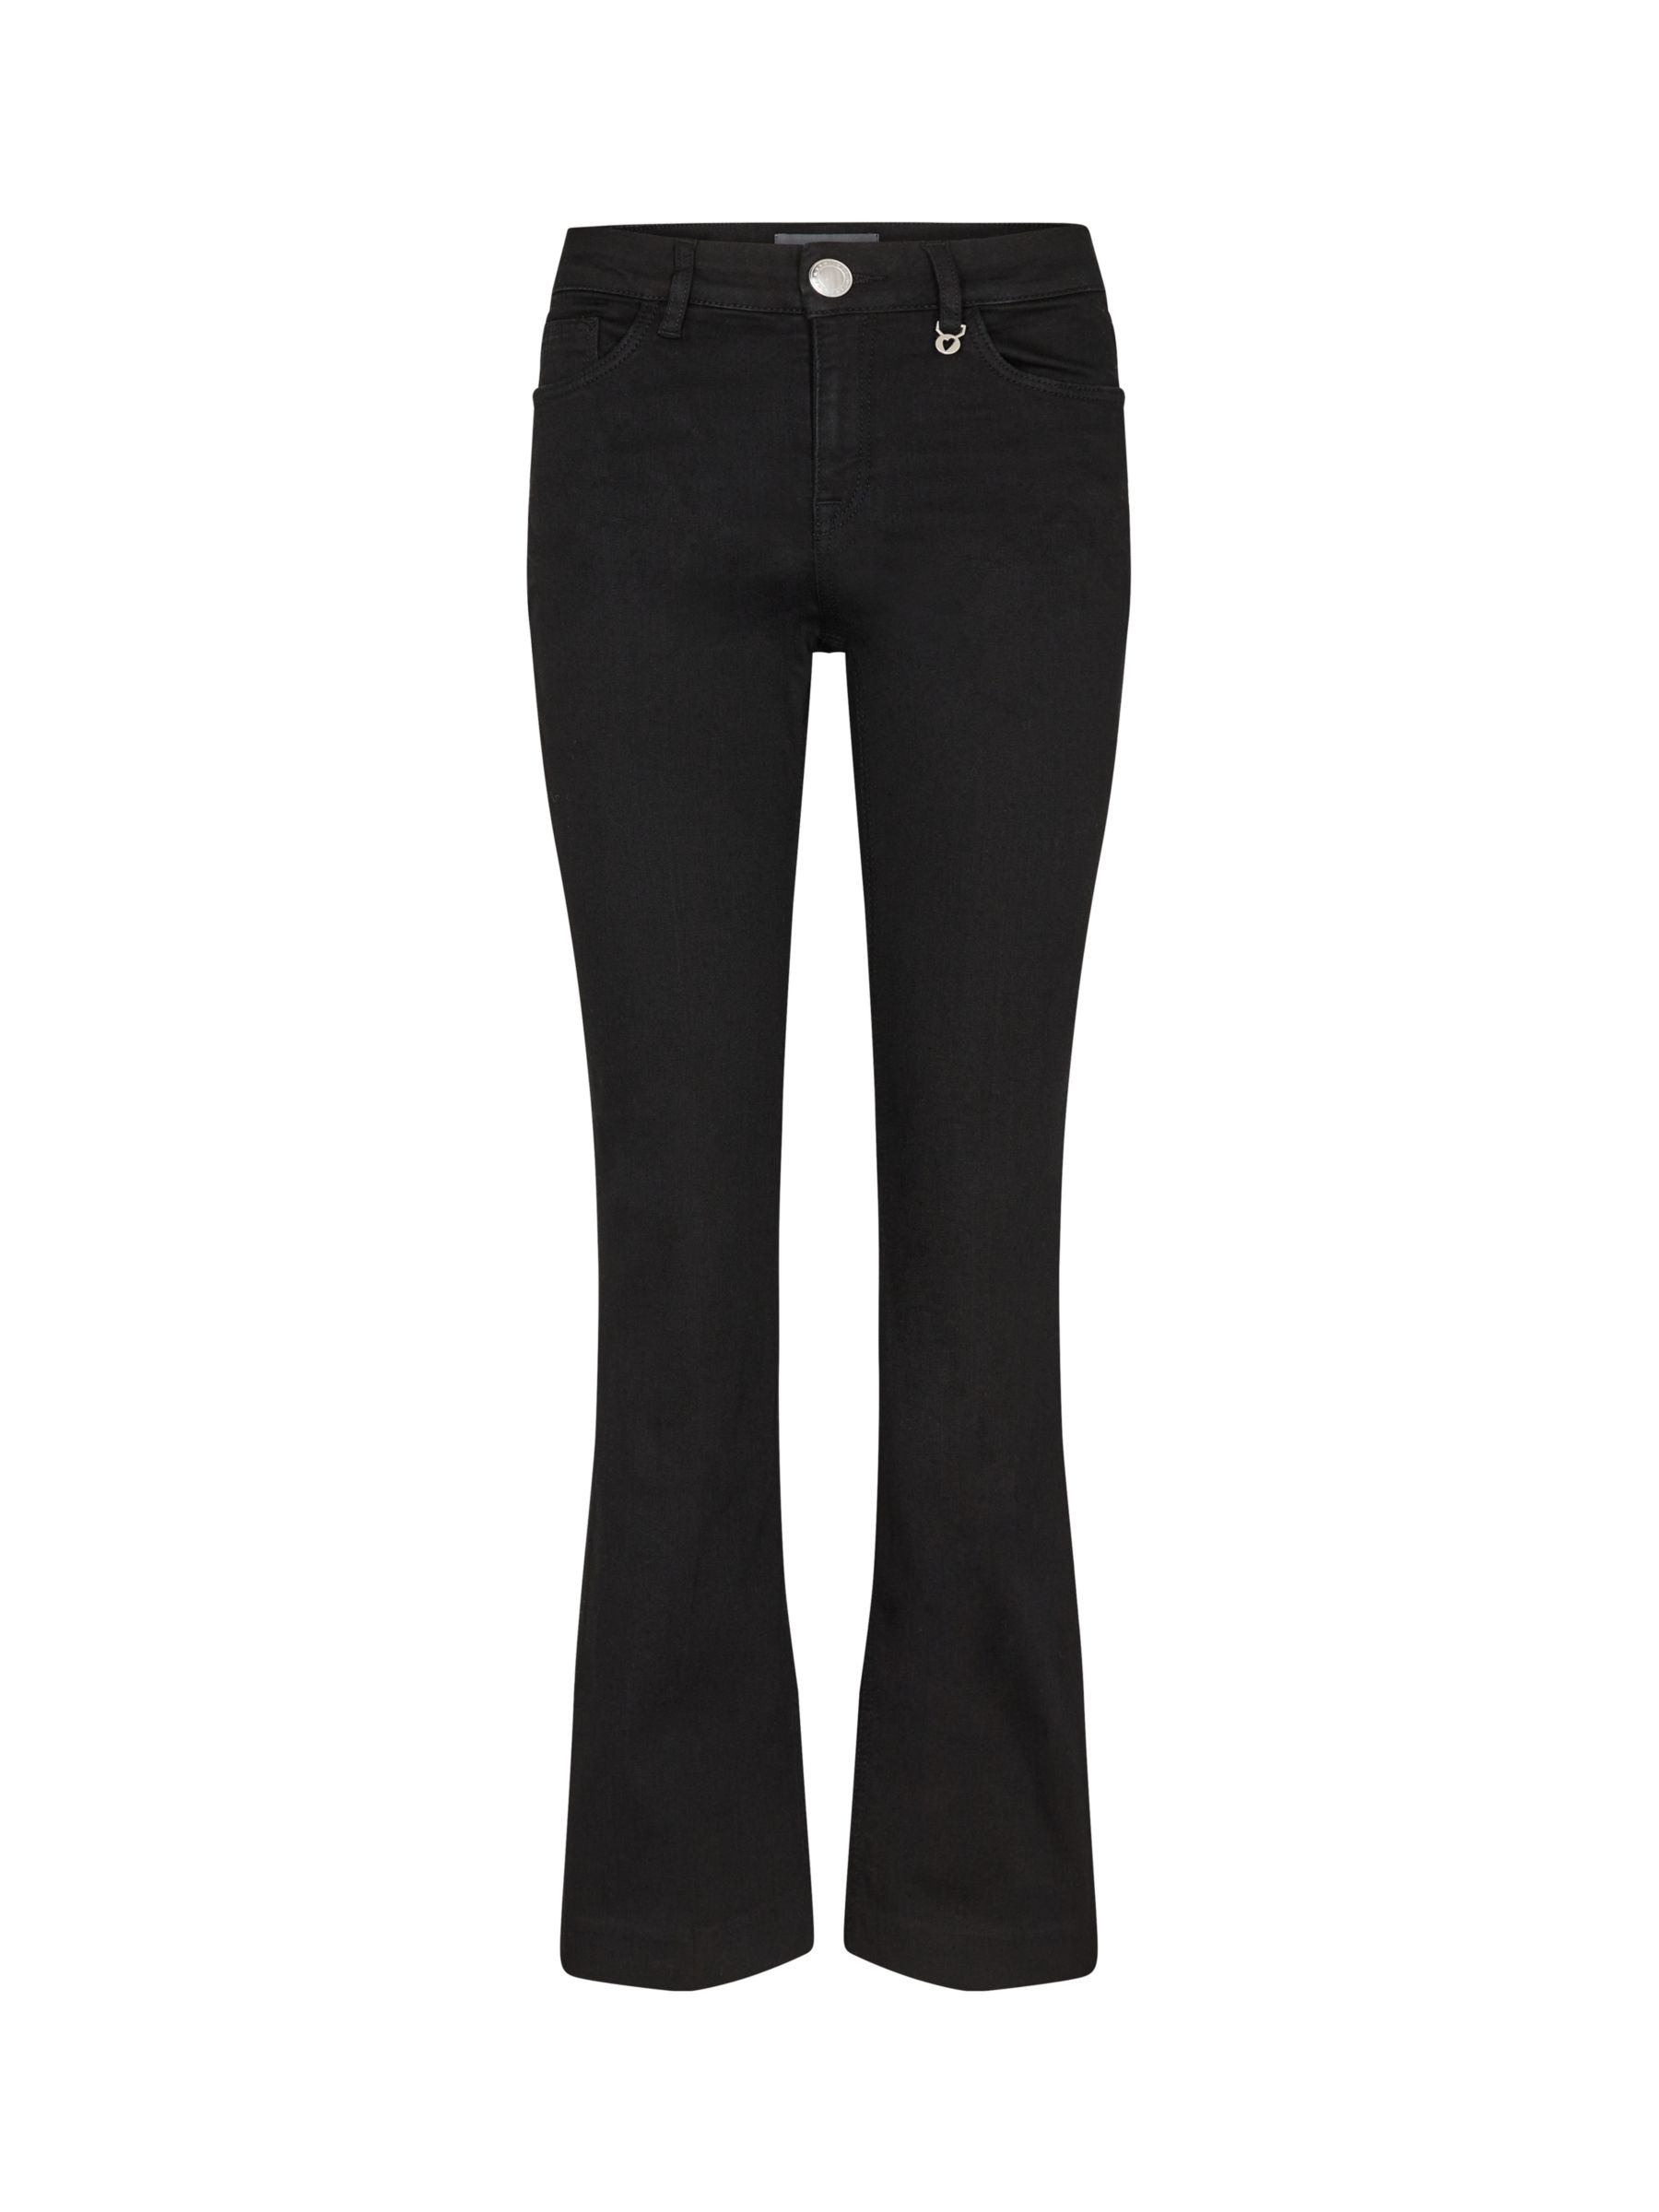 MOS MOSH Alli Hybrid Stretch Flared Jeans, Black, 24R